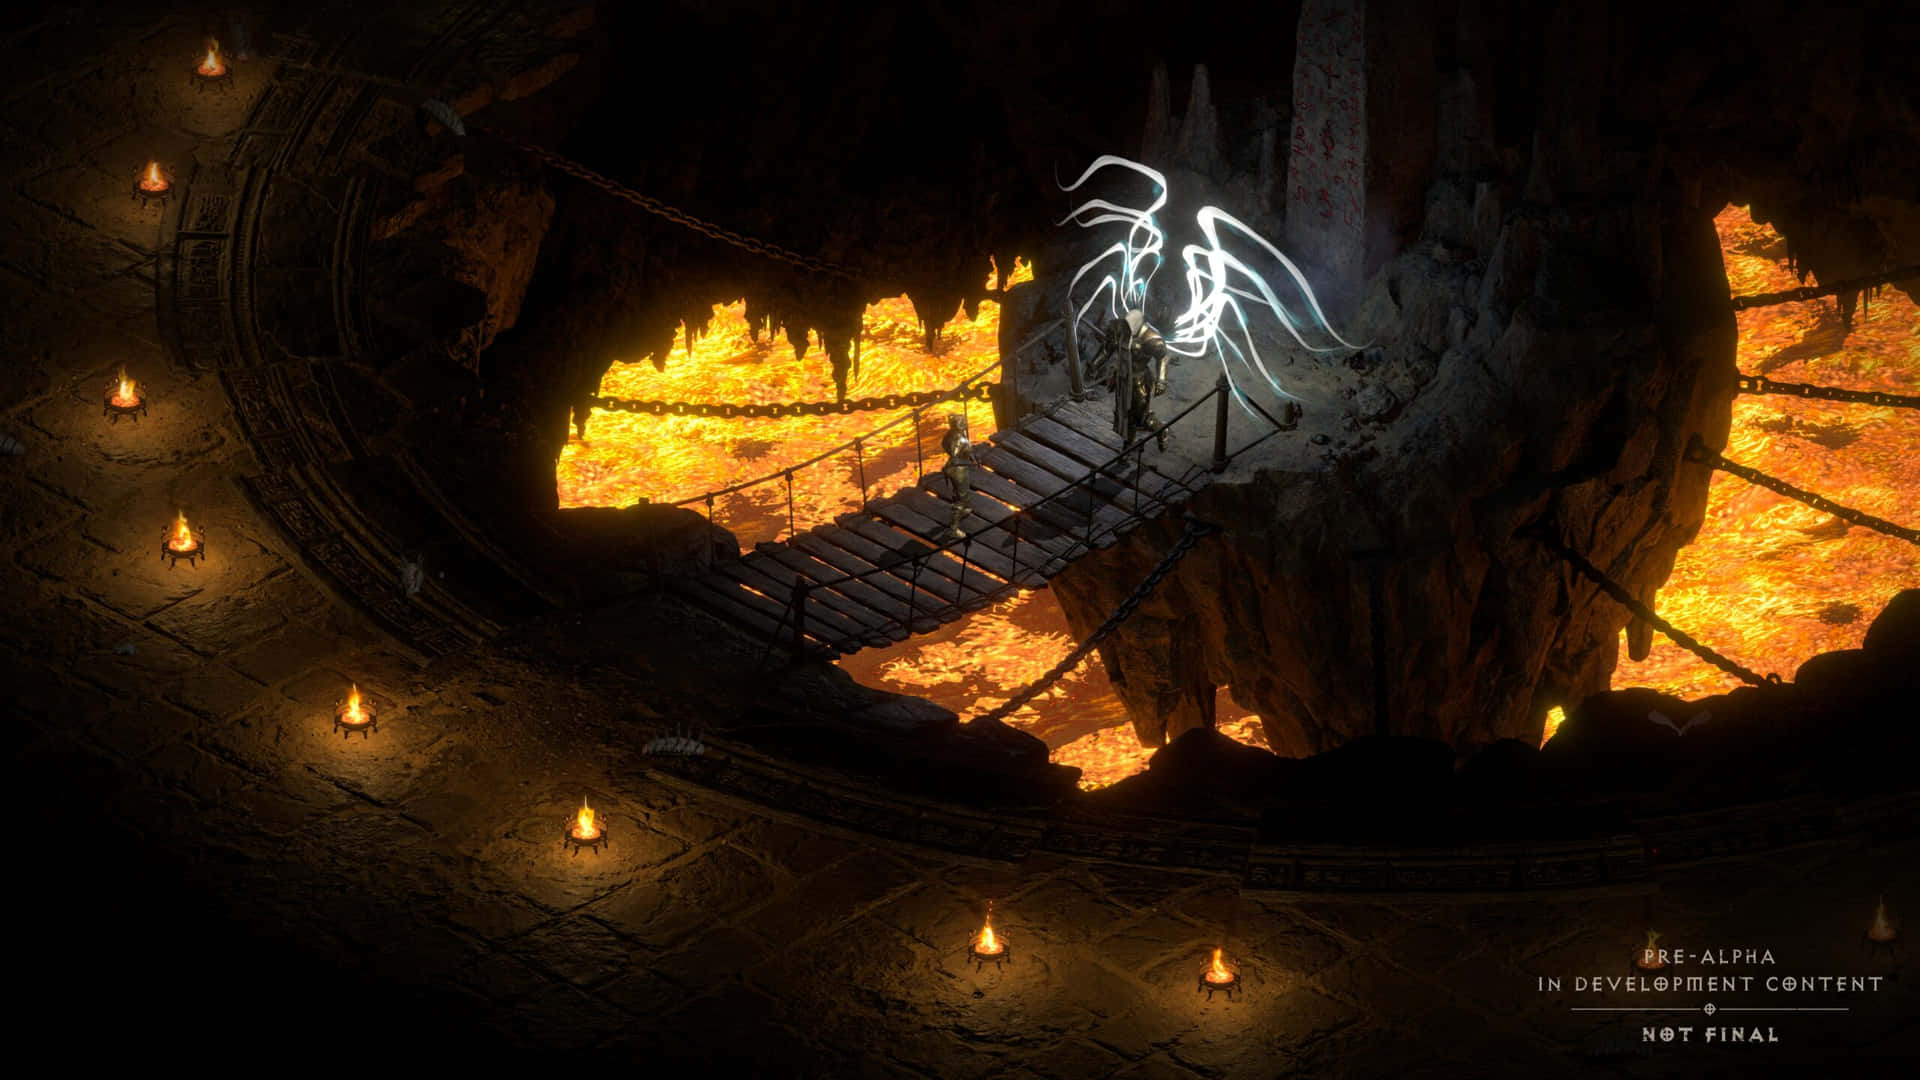 Dyk ned i de dybe af Diablo 2-verden og udforsk djævlenes dyb hver gang du låser din skærm op. Wallpaper